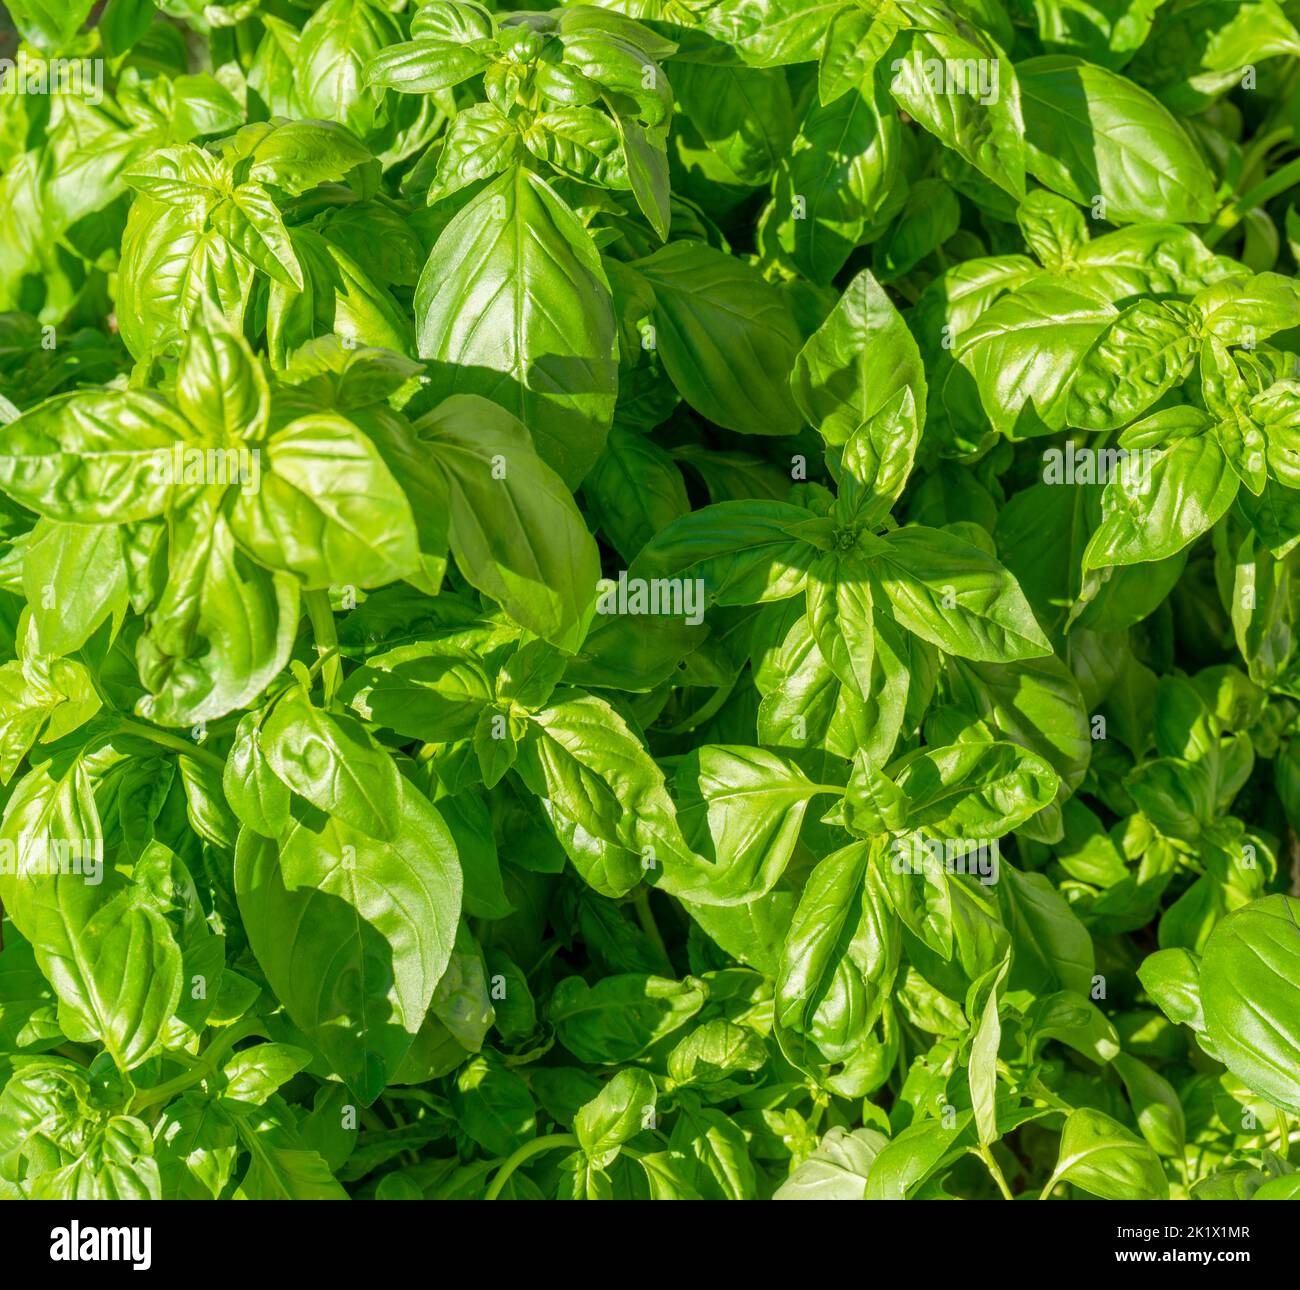 Foto de primer plano de fotograma completo iluminada y soleada que muestra muchas plantas de albahaca verde Foto de stock